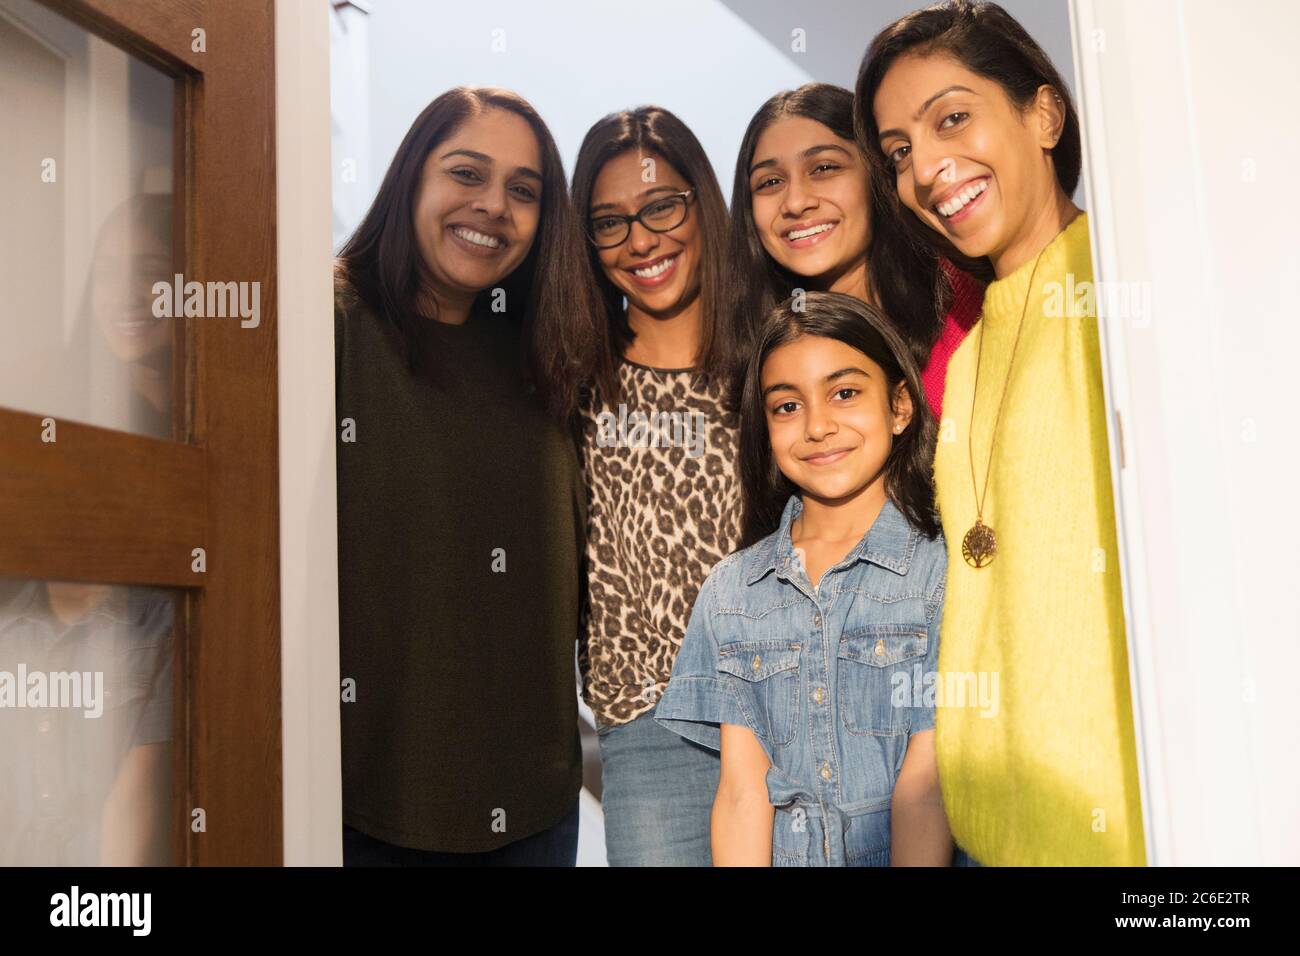 Portrait happy Indian women and girls in doorway Stock Photo